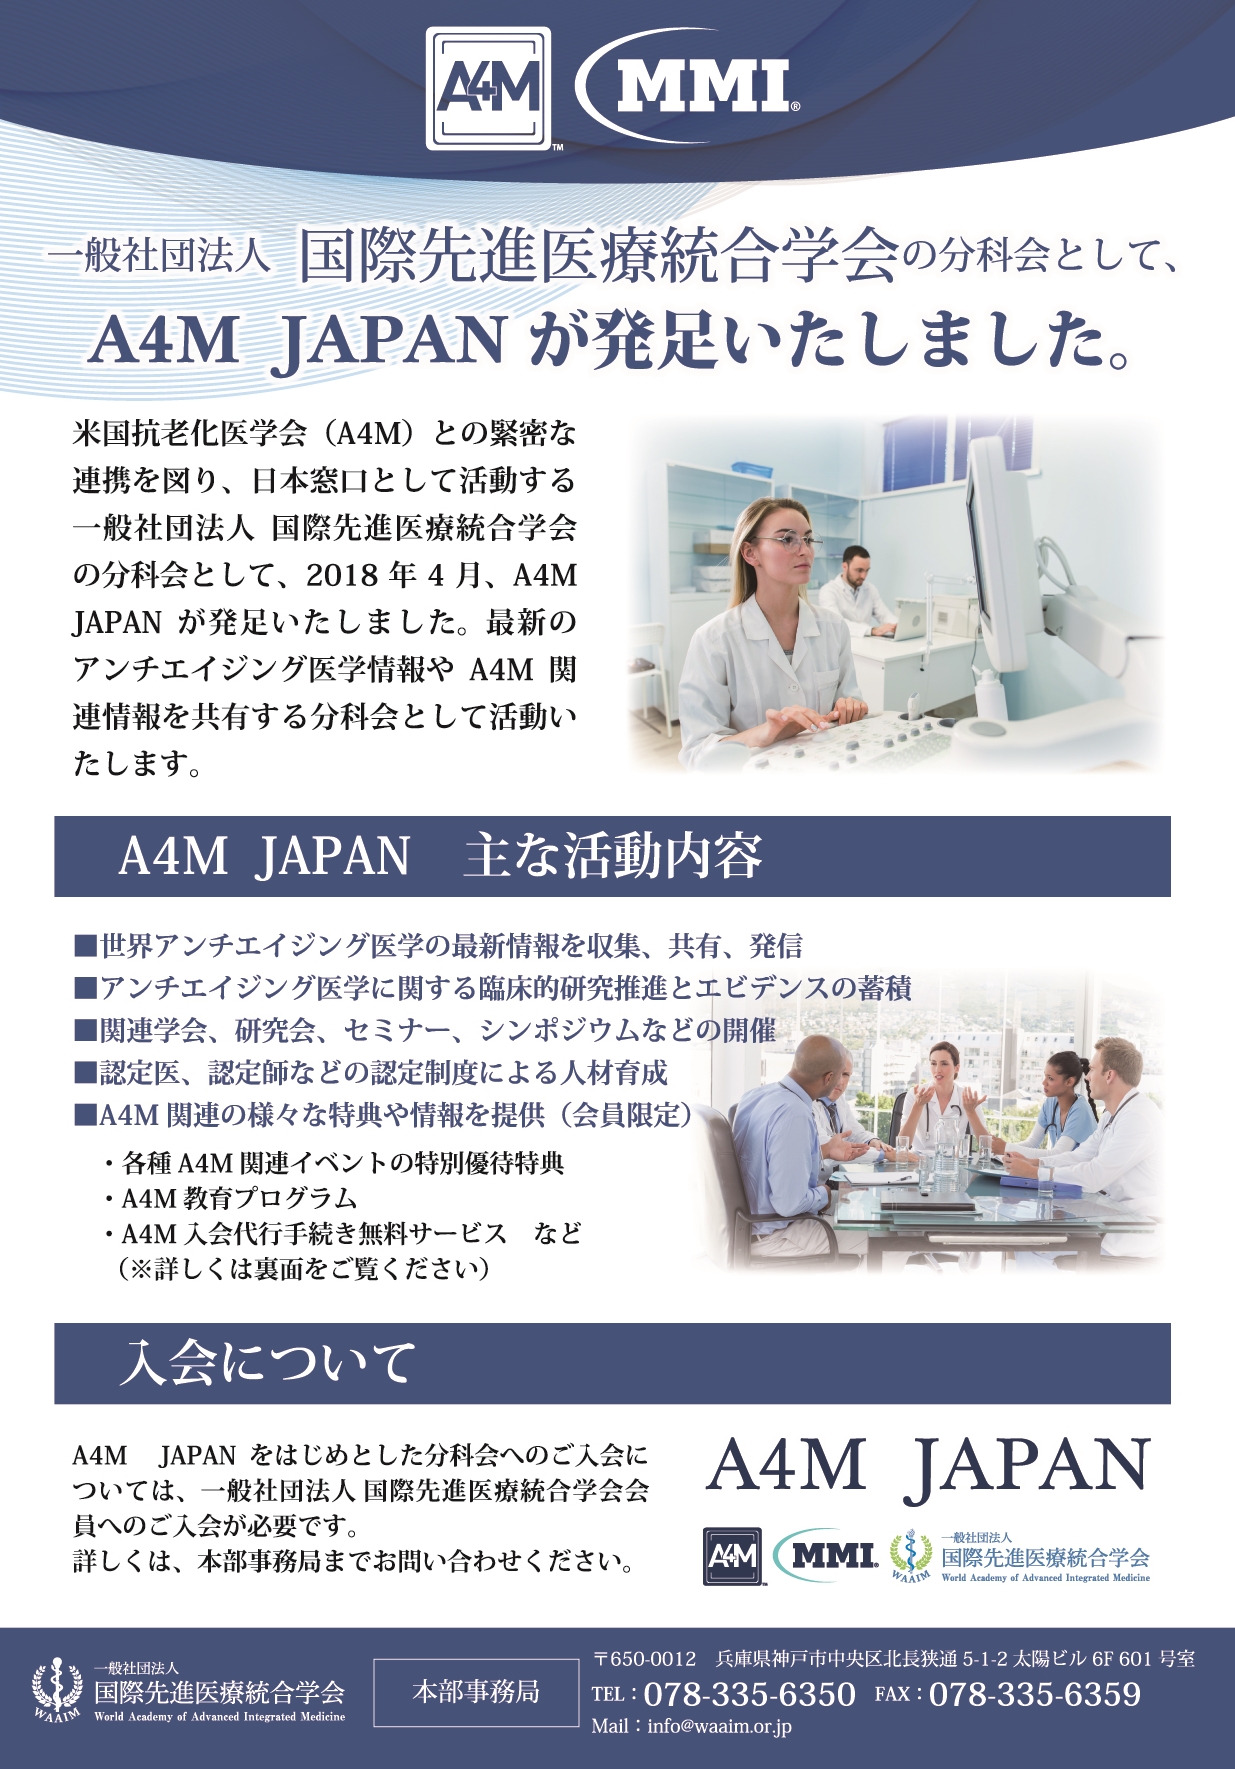 2018年4月、本学会の分科会として『A4M  JAPAN』が発足いたしました。